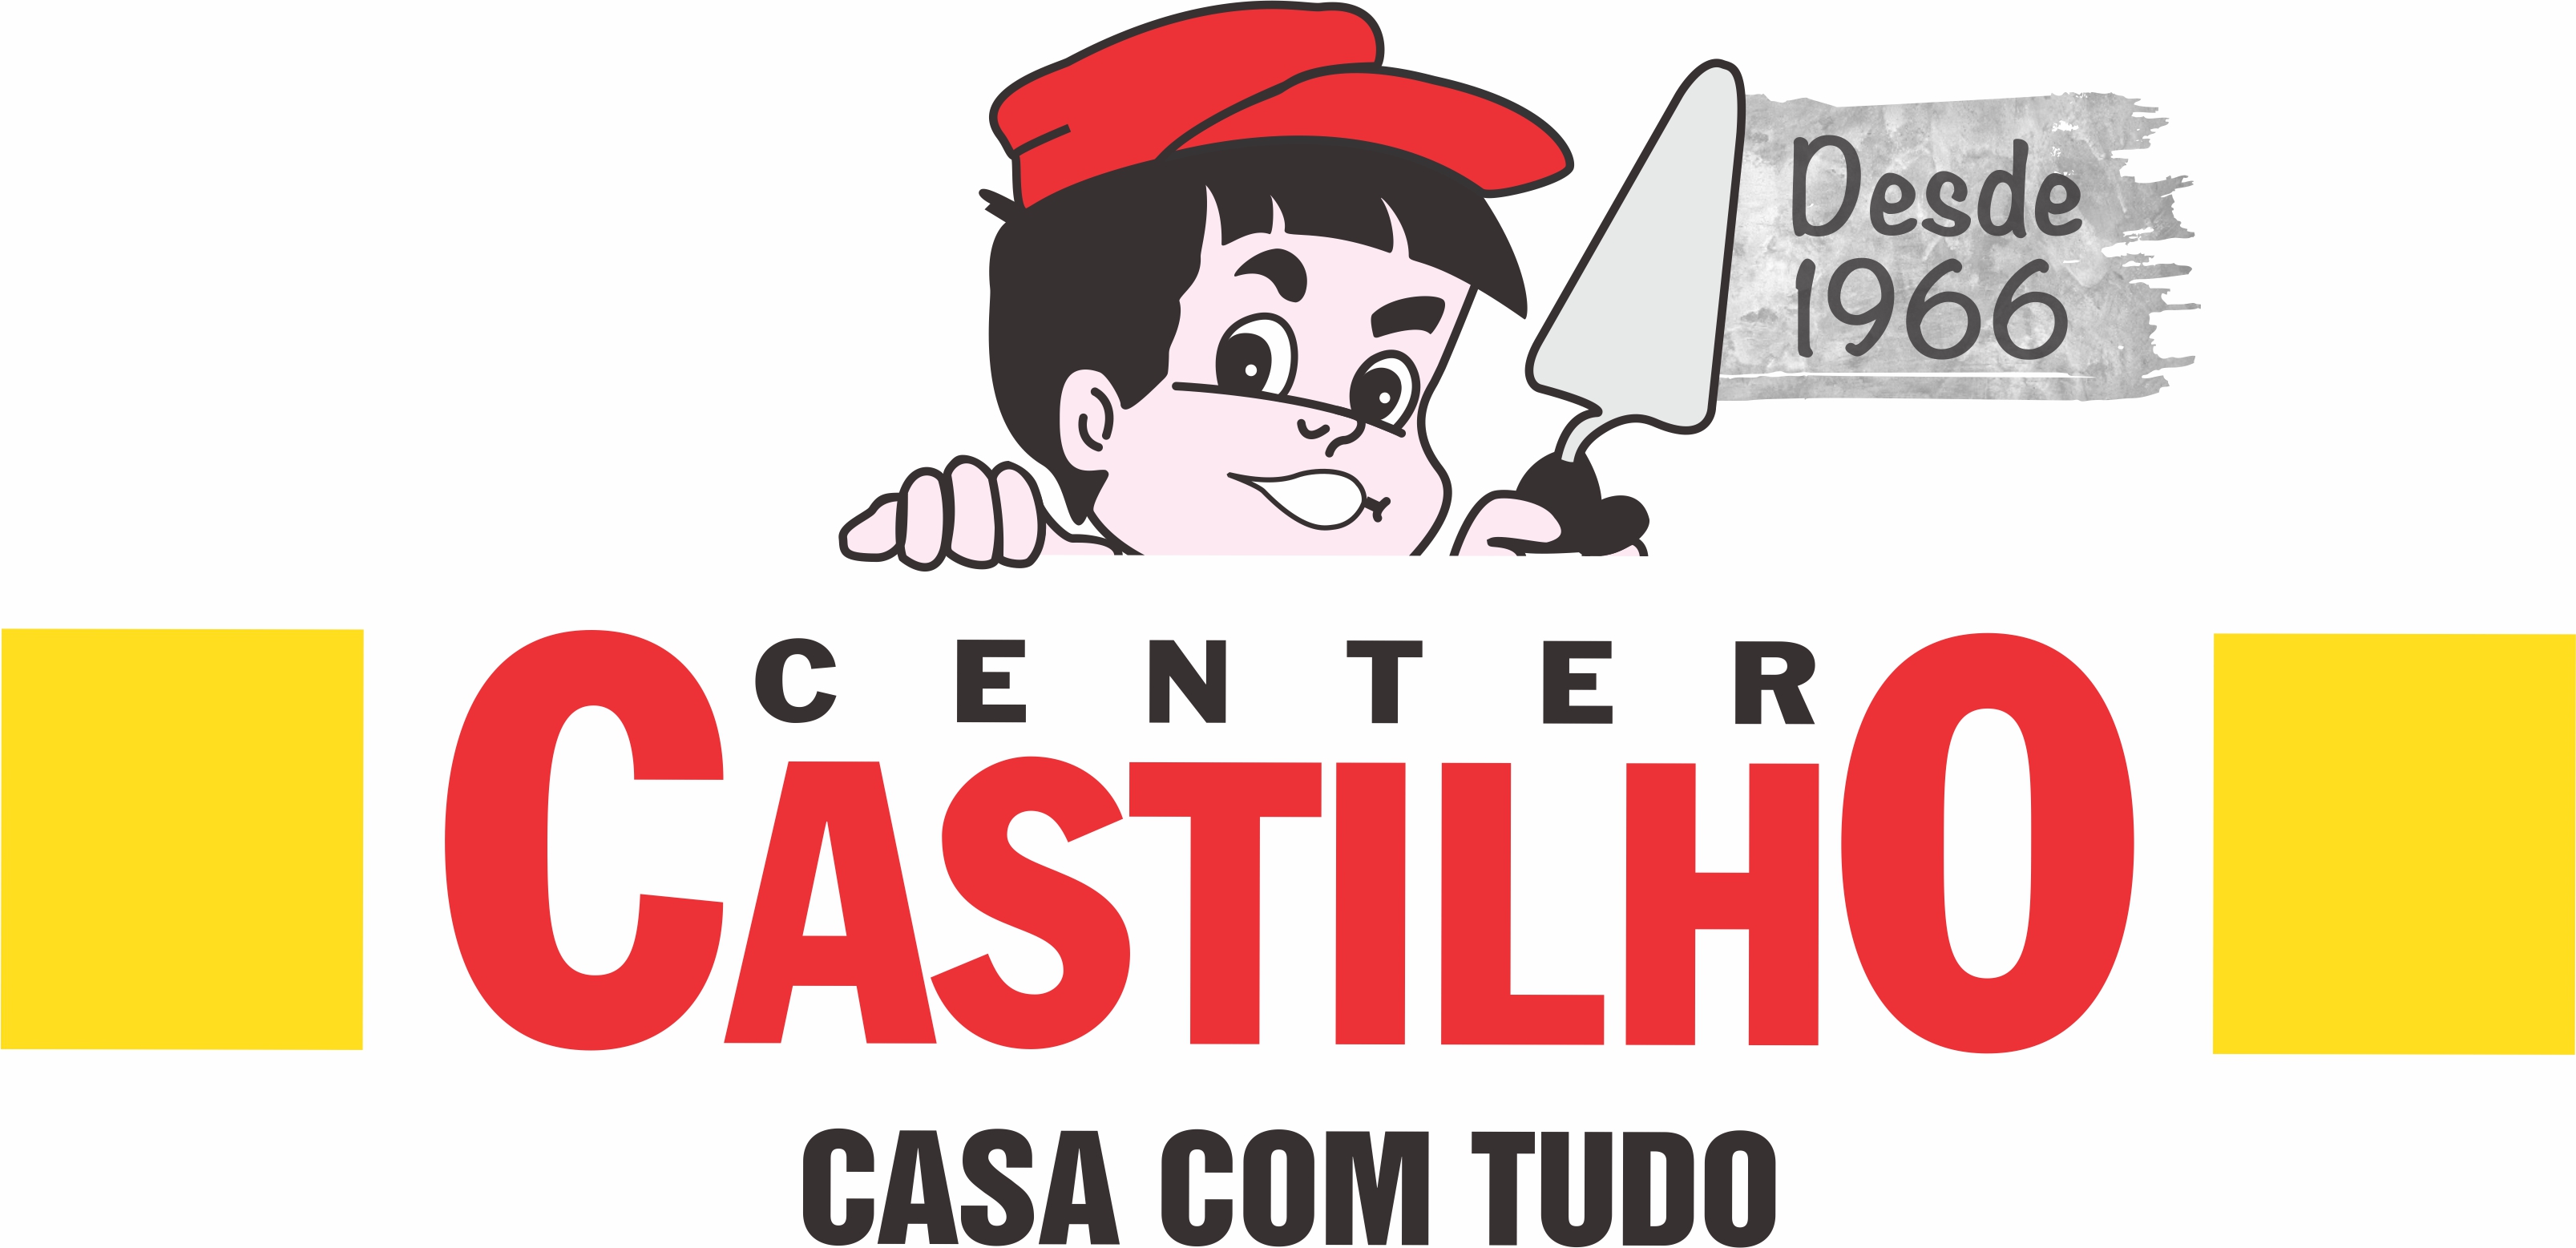 CENTER CASTILHO - Materiais de Construção - Mogi das Cruzes, SP